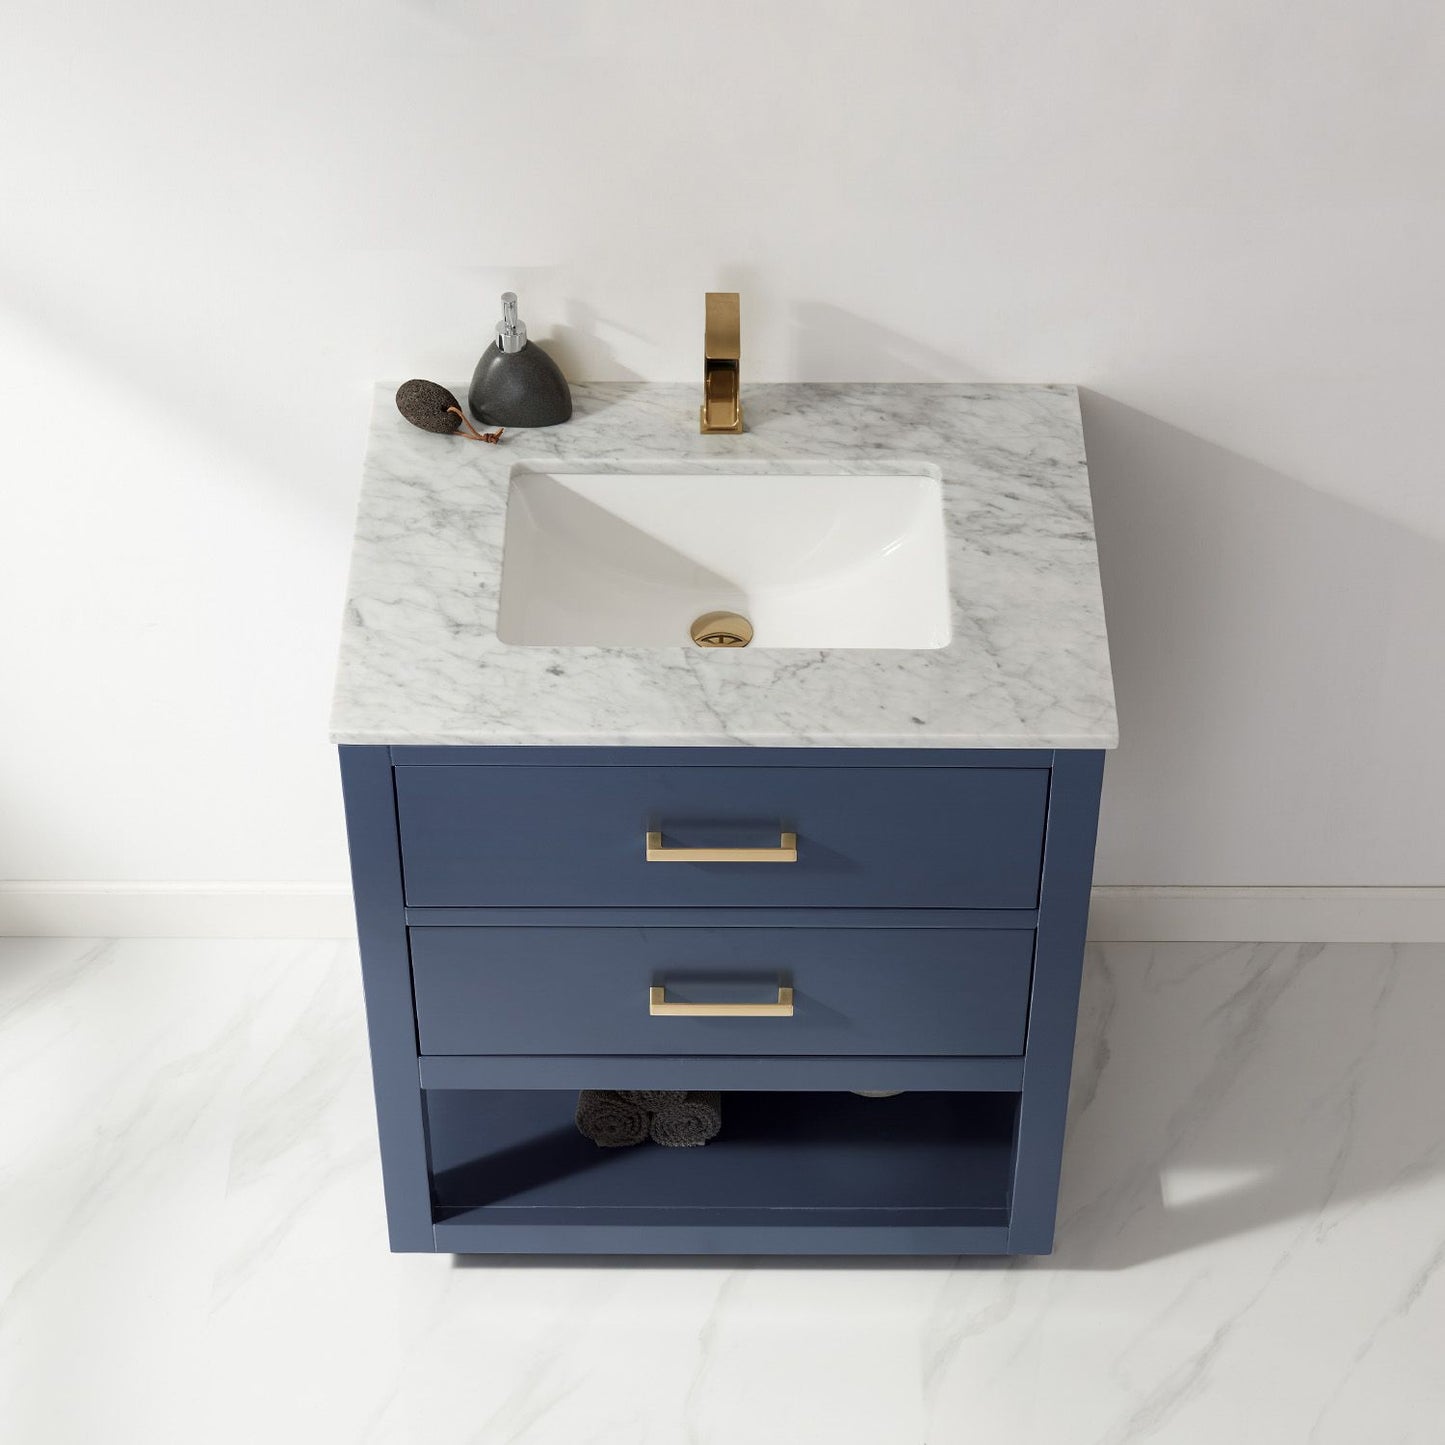 Altair Remi 30" Single Bathroom Vanity Set Countertop without Mirror - Luxe Bathroom Vanities